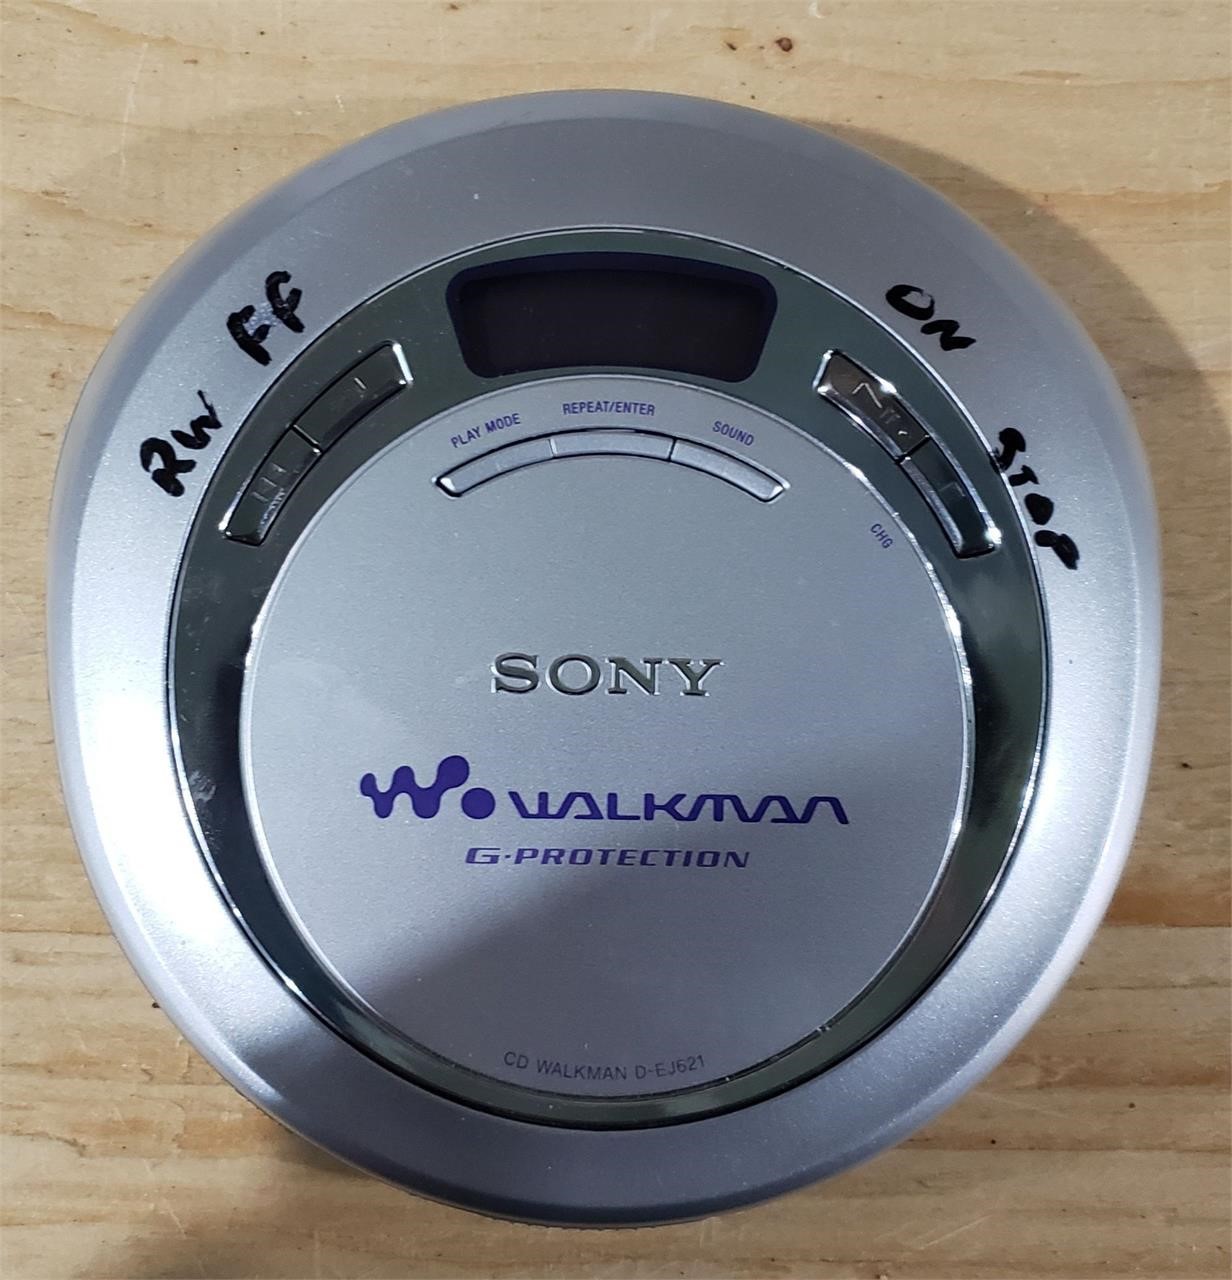 Sony Walkman (CD) AS IS